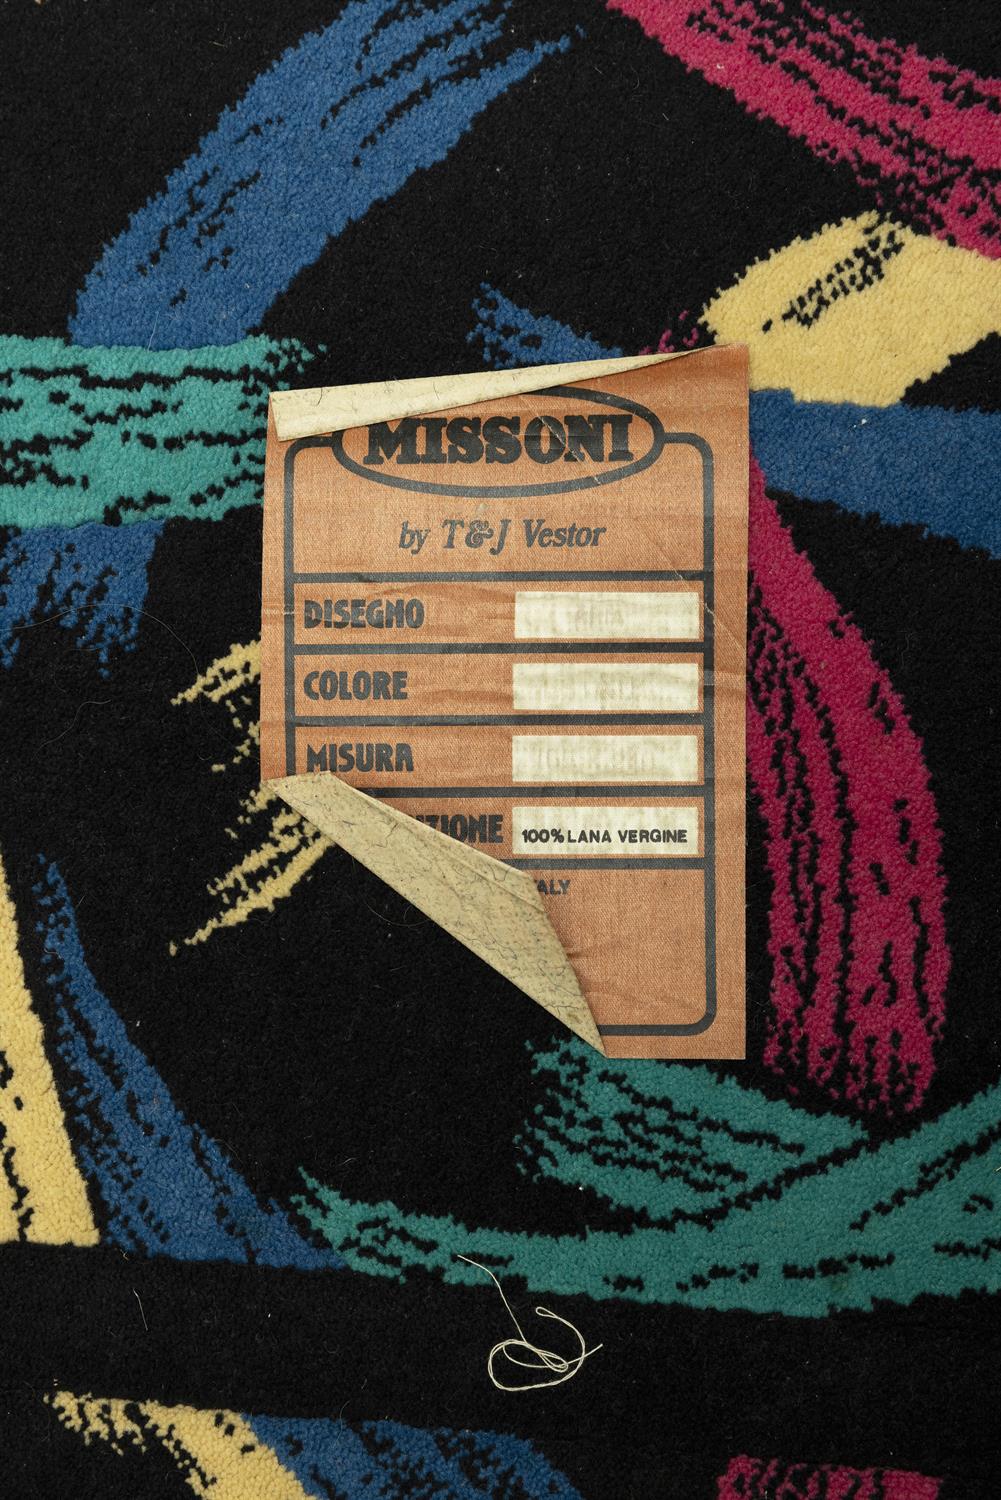 MISSONI A vintage Missoni rug by T&J Vestor, with maker's label. 242 x 164cm. - Image 3 of 3